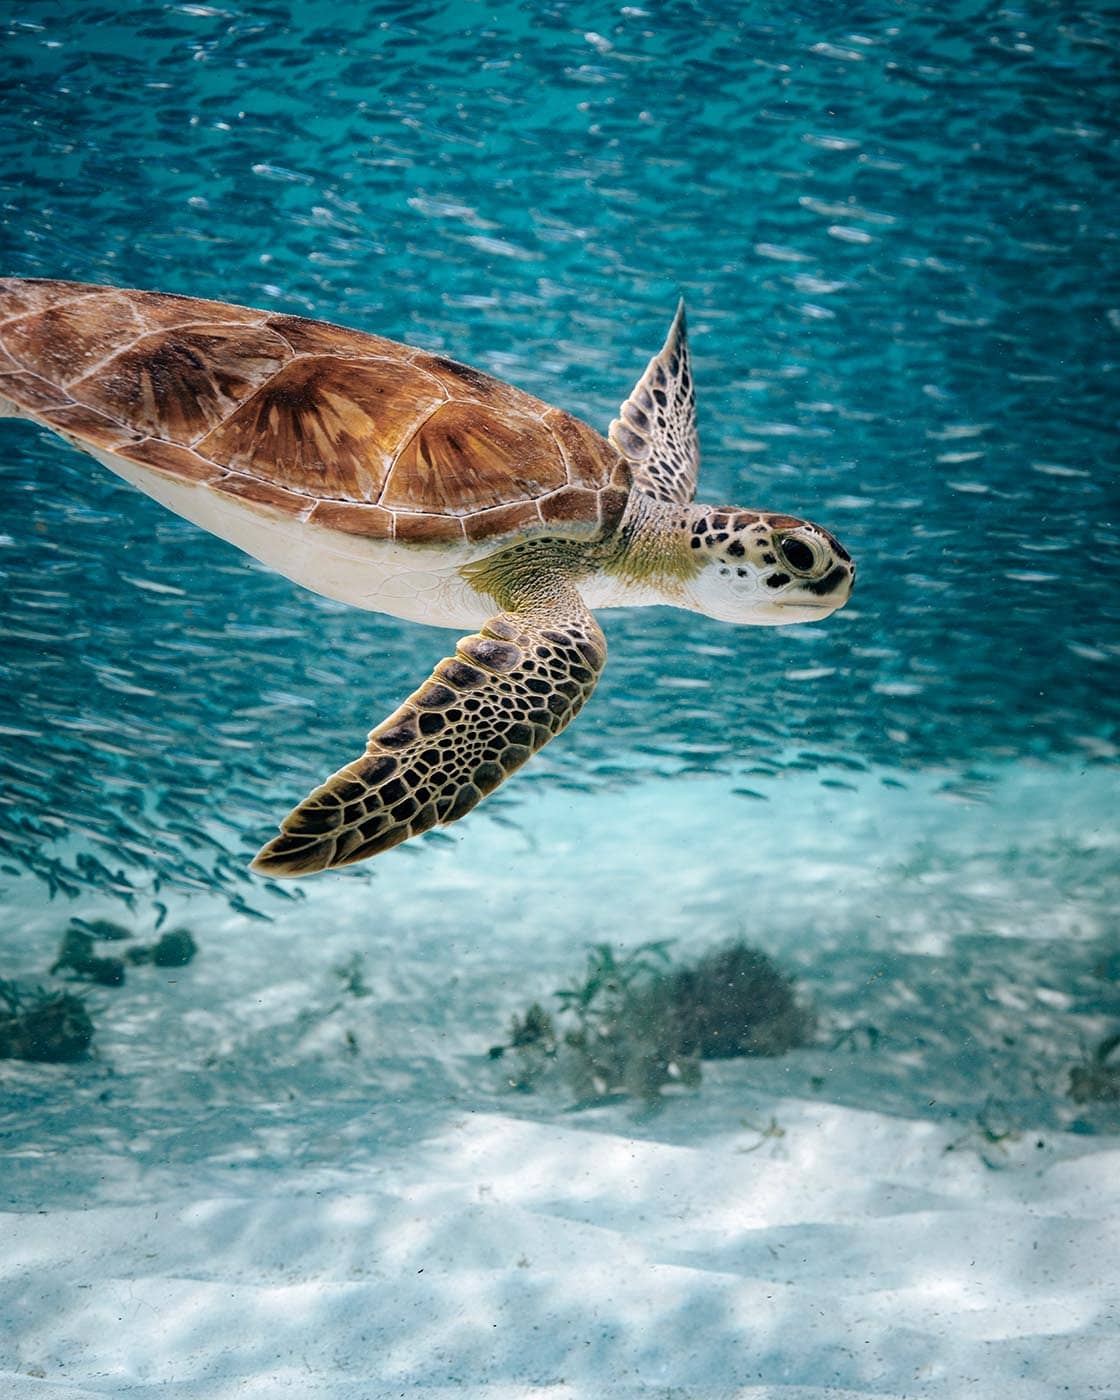 Abtauchen mit Schildkröten? Auf Aruba kein Problem